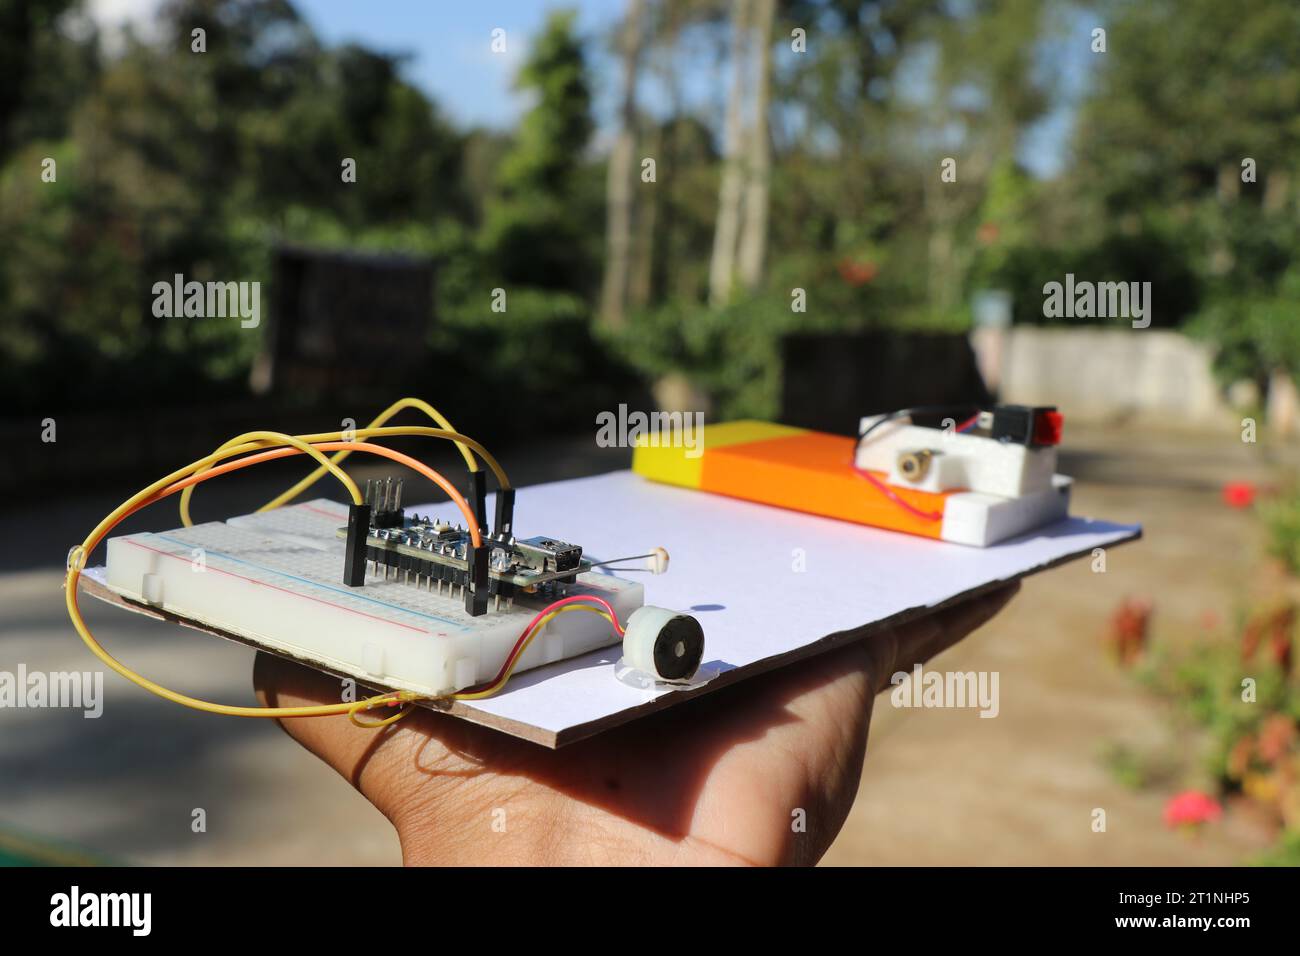 Laser-Sicherheitsalarm-Projekt mit Mikrocontroller, der an die Steckplatine angeschlossen ist und über Summer und LDR verfügt, während andere Schaltkreise über ein LED-Modul verfügen Stockfoto